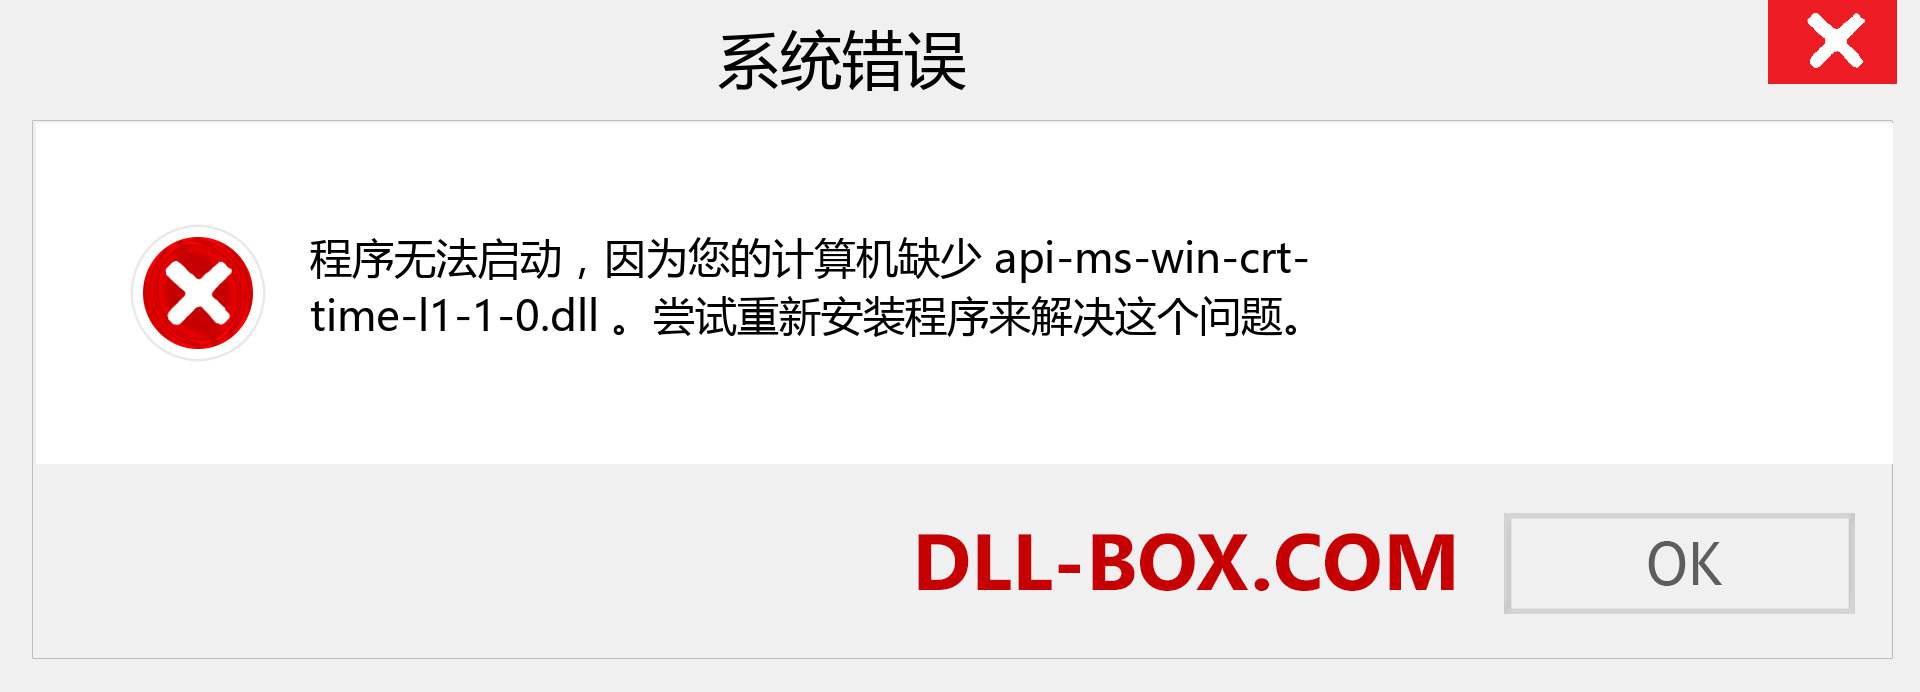 api-ms-win-crt-time-l1-1-0.dll 文件丢失？。 适用于 Windows 7、8、10 的下载 - 修复 Windows、照片、图像上的 api-ms-win-crt-time-l1-1-0 dll 丢失错误